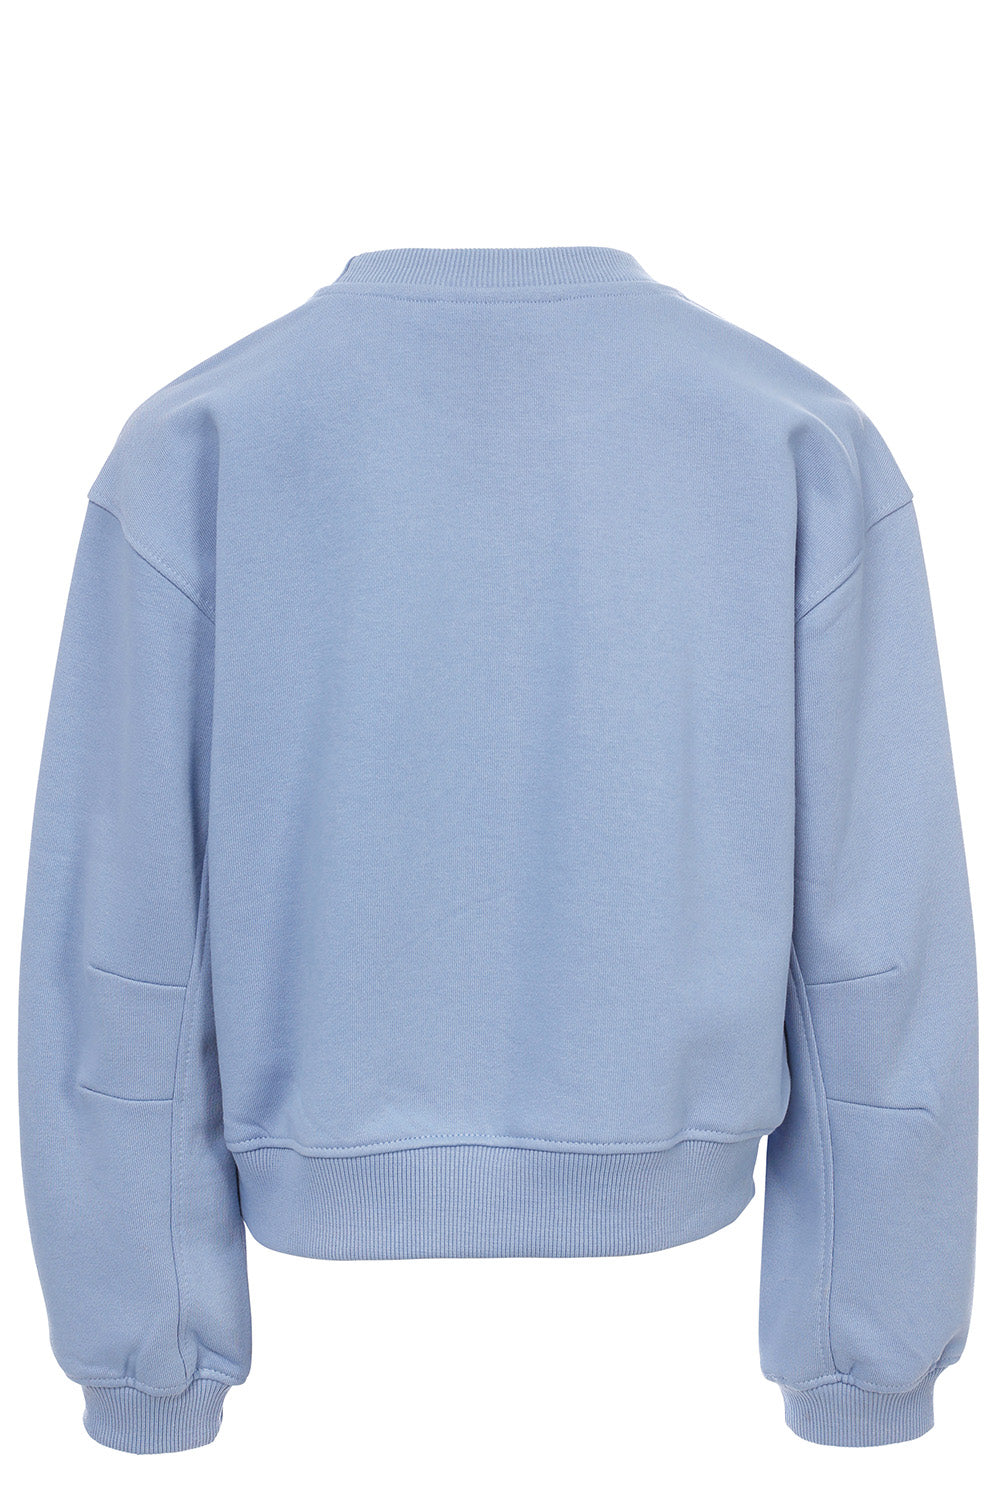 Meisjes Sweater van LOOXS 10sixteen in de kleur Light blue in maat 176.